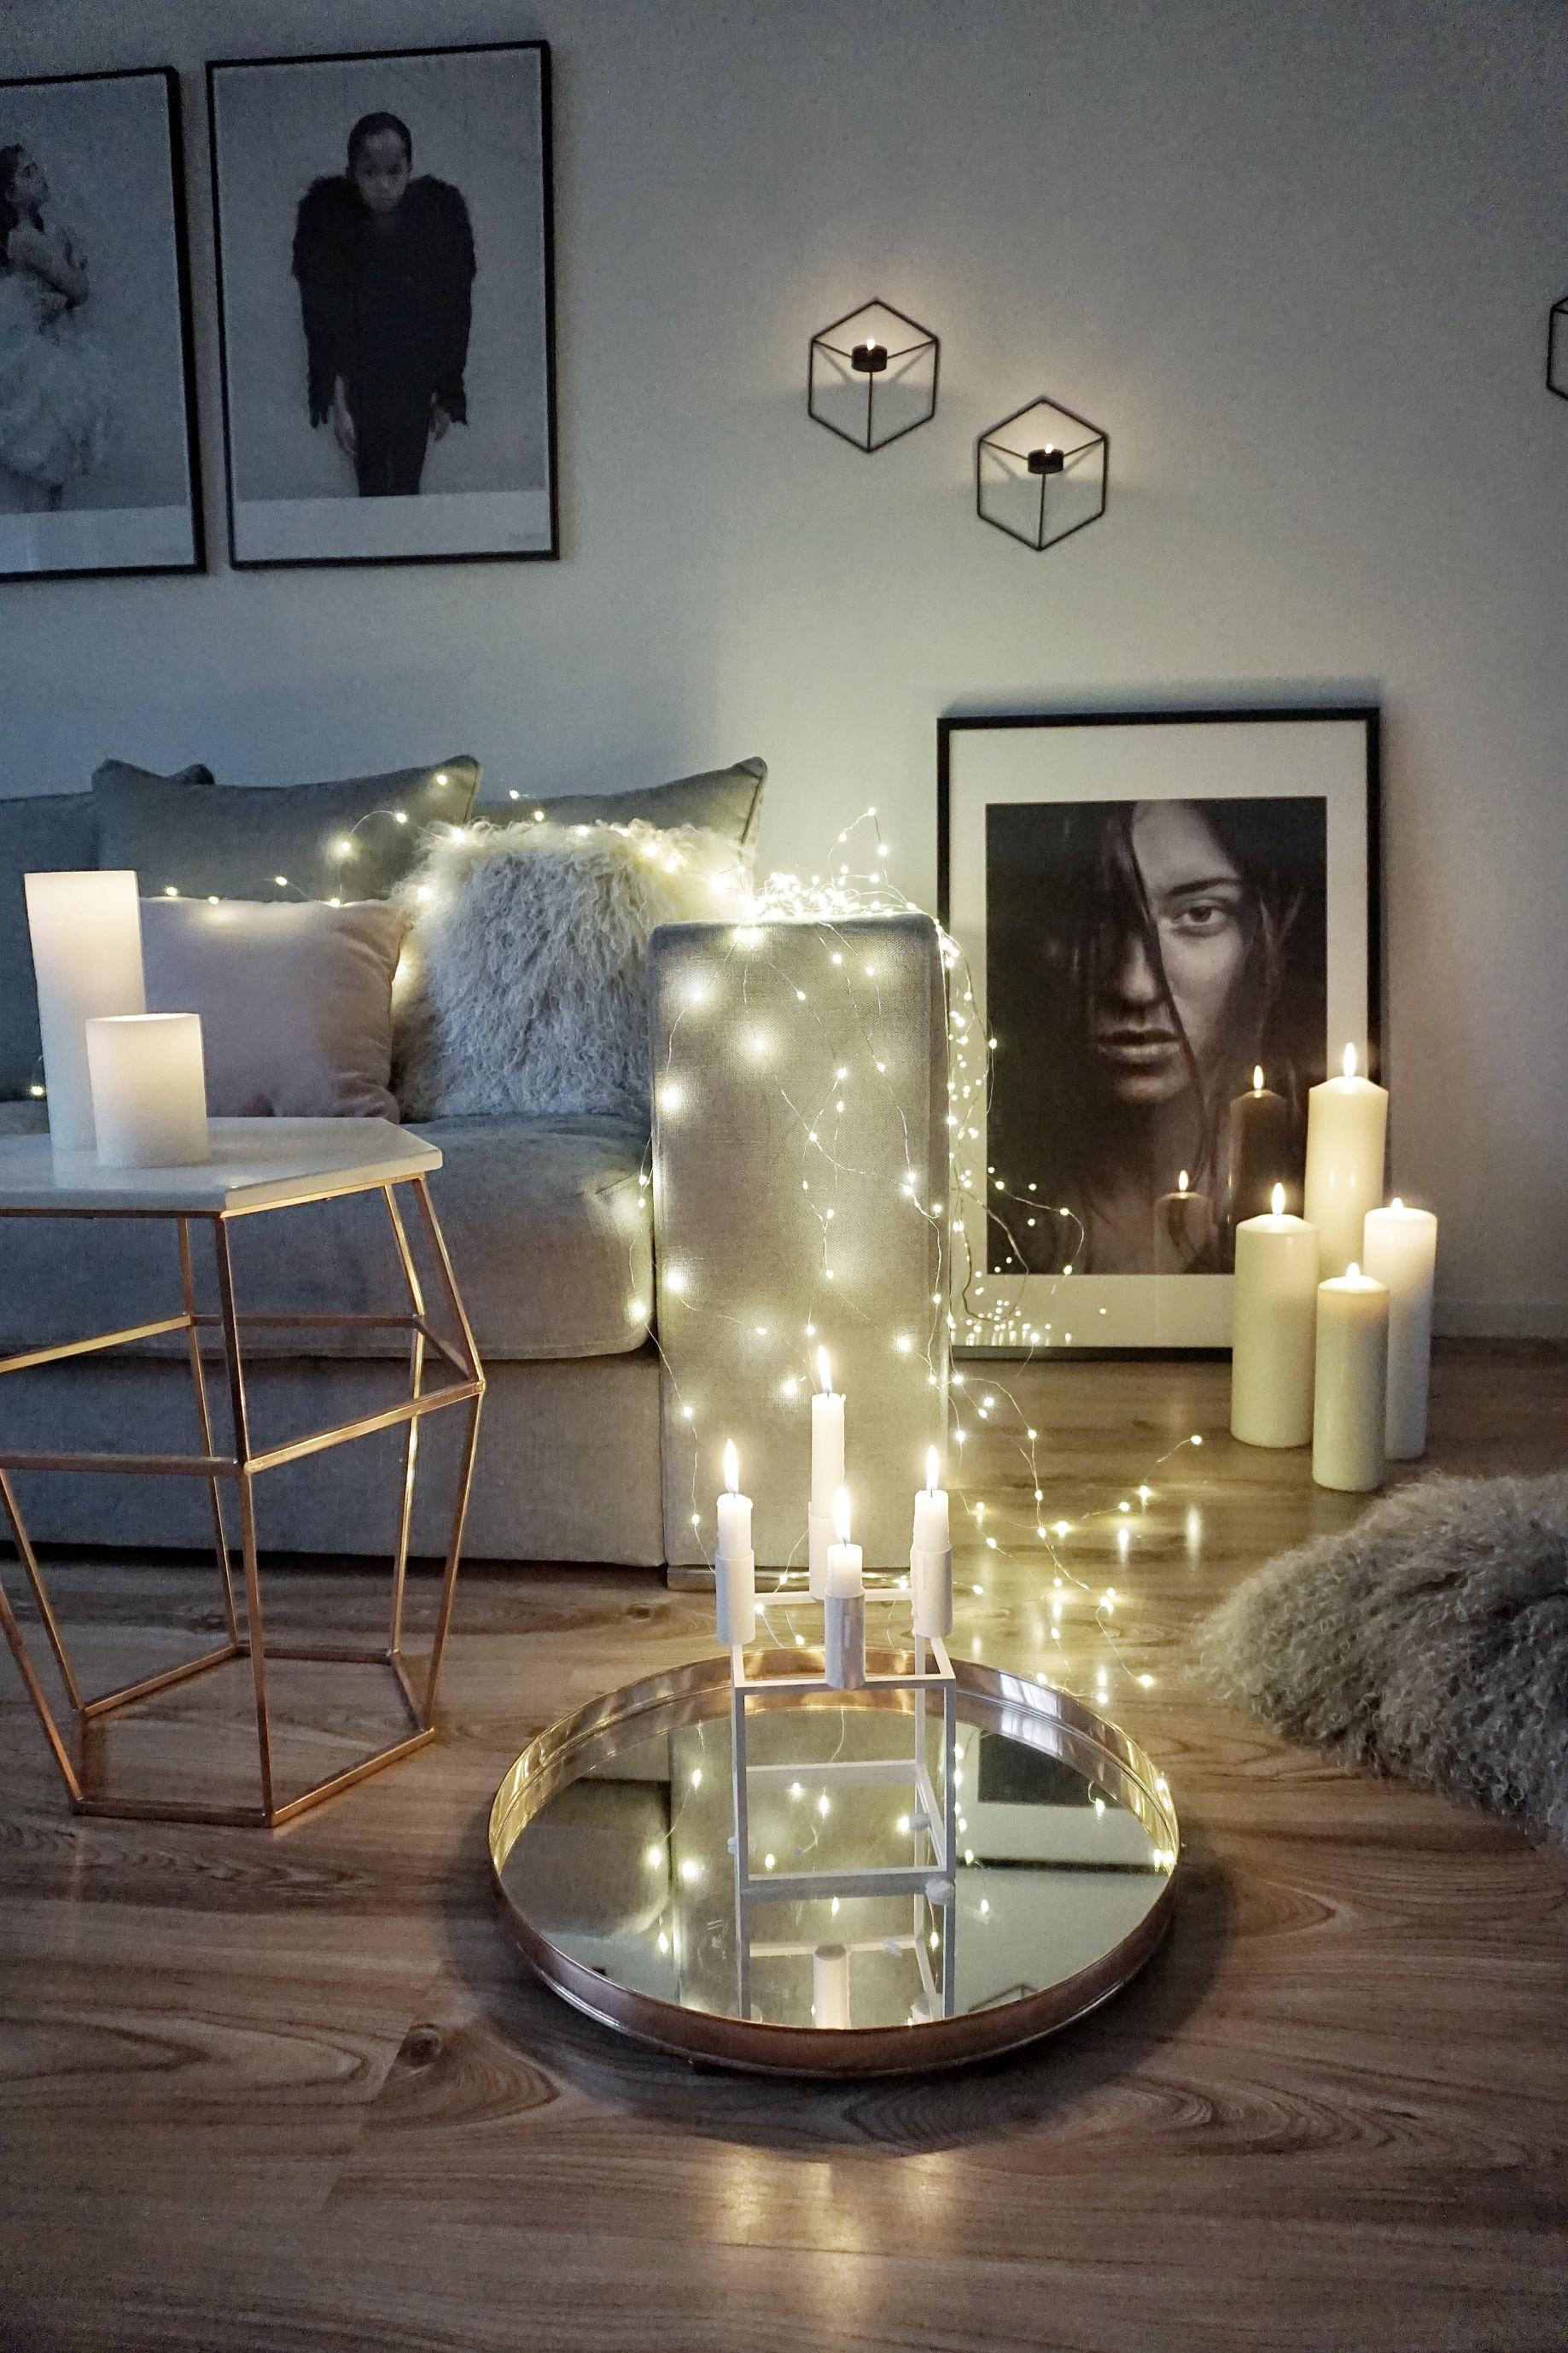 Sofa 'Newman' im Wohnzimmer der Bloggerin easyinterieur #ecksofa #weihnachtsdeko ©Amaris Elements